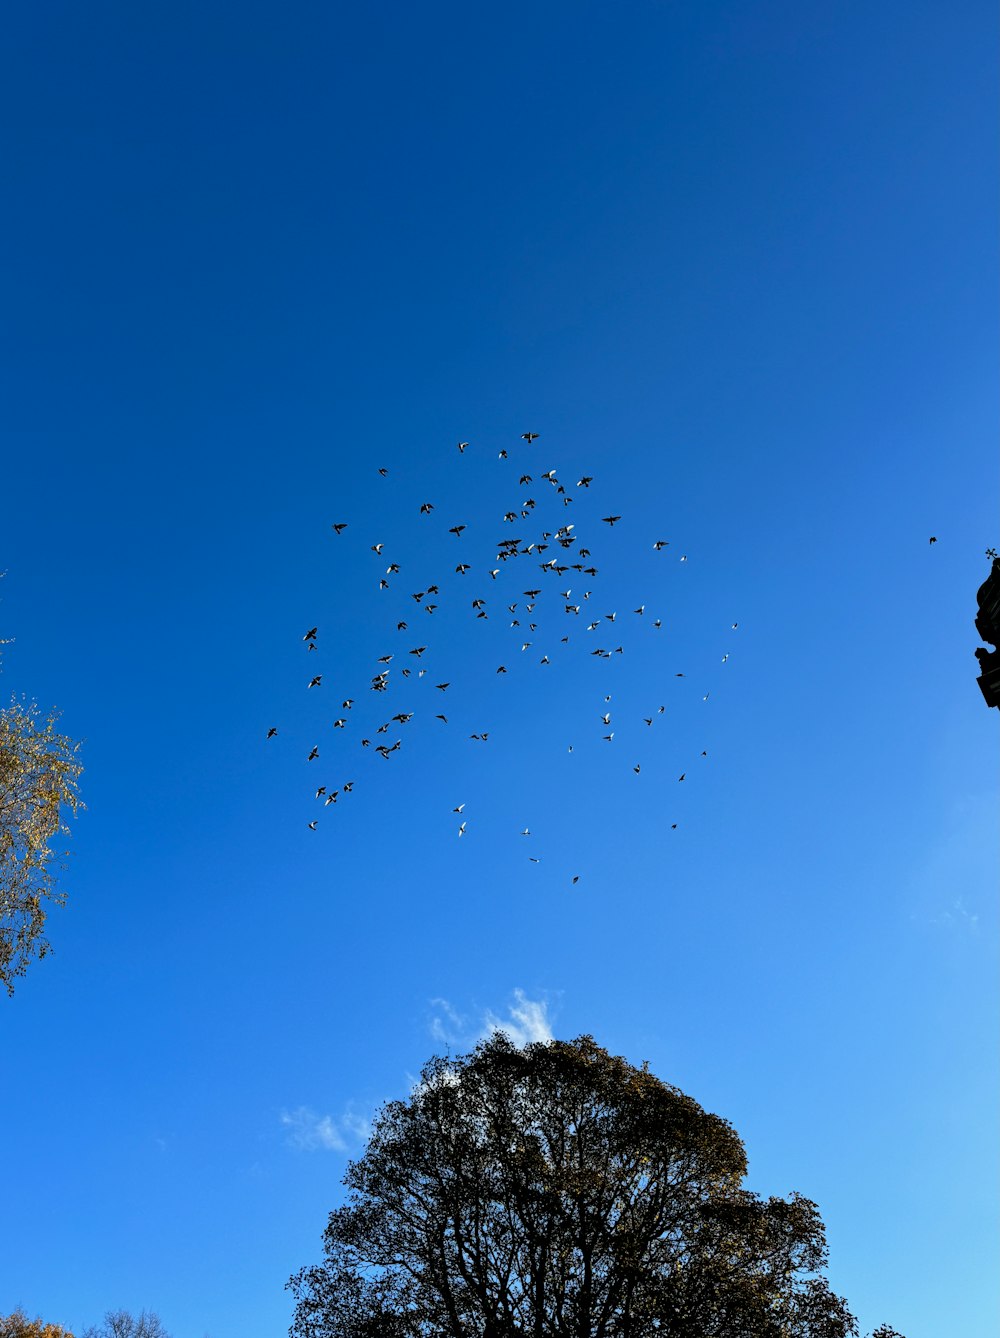 a flock of birds flying in a blue sky